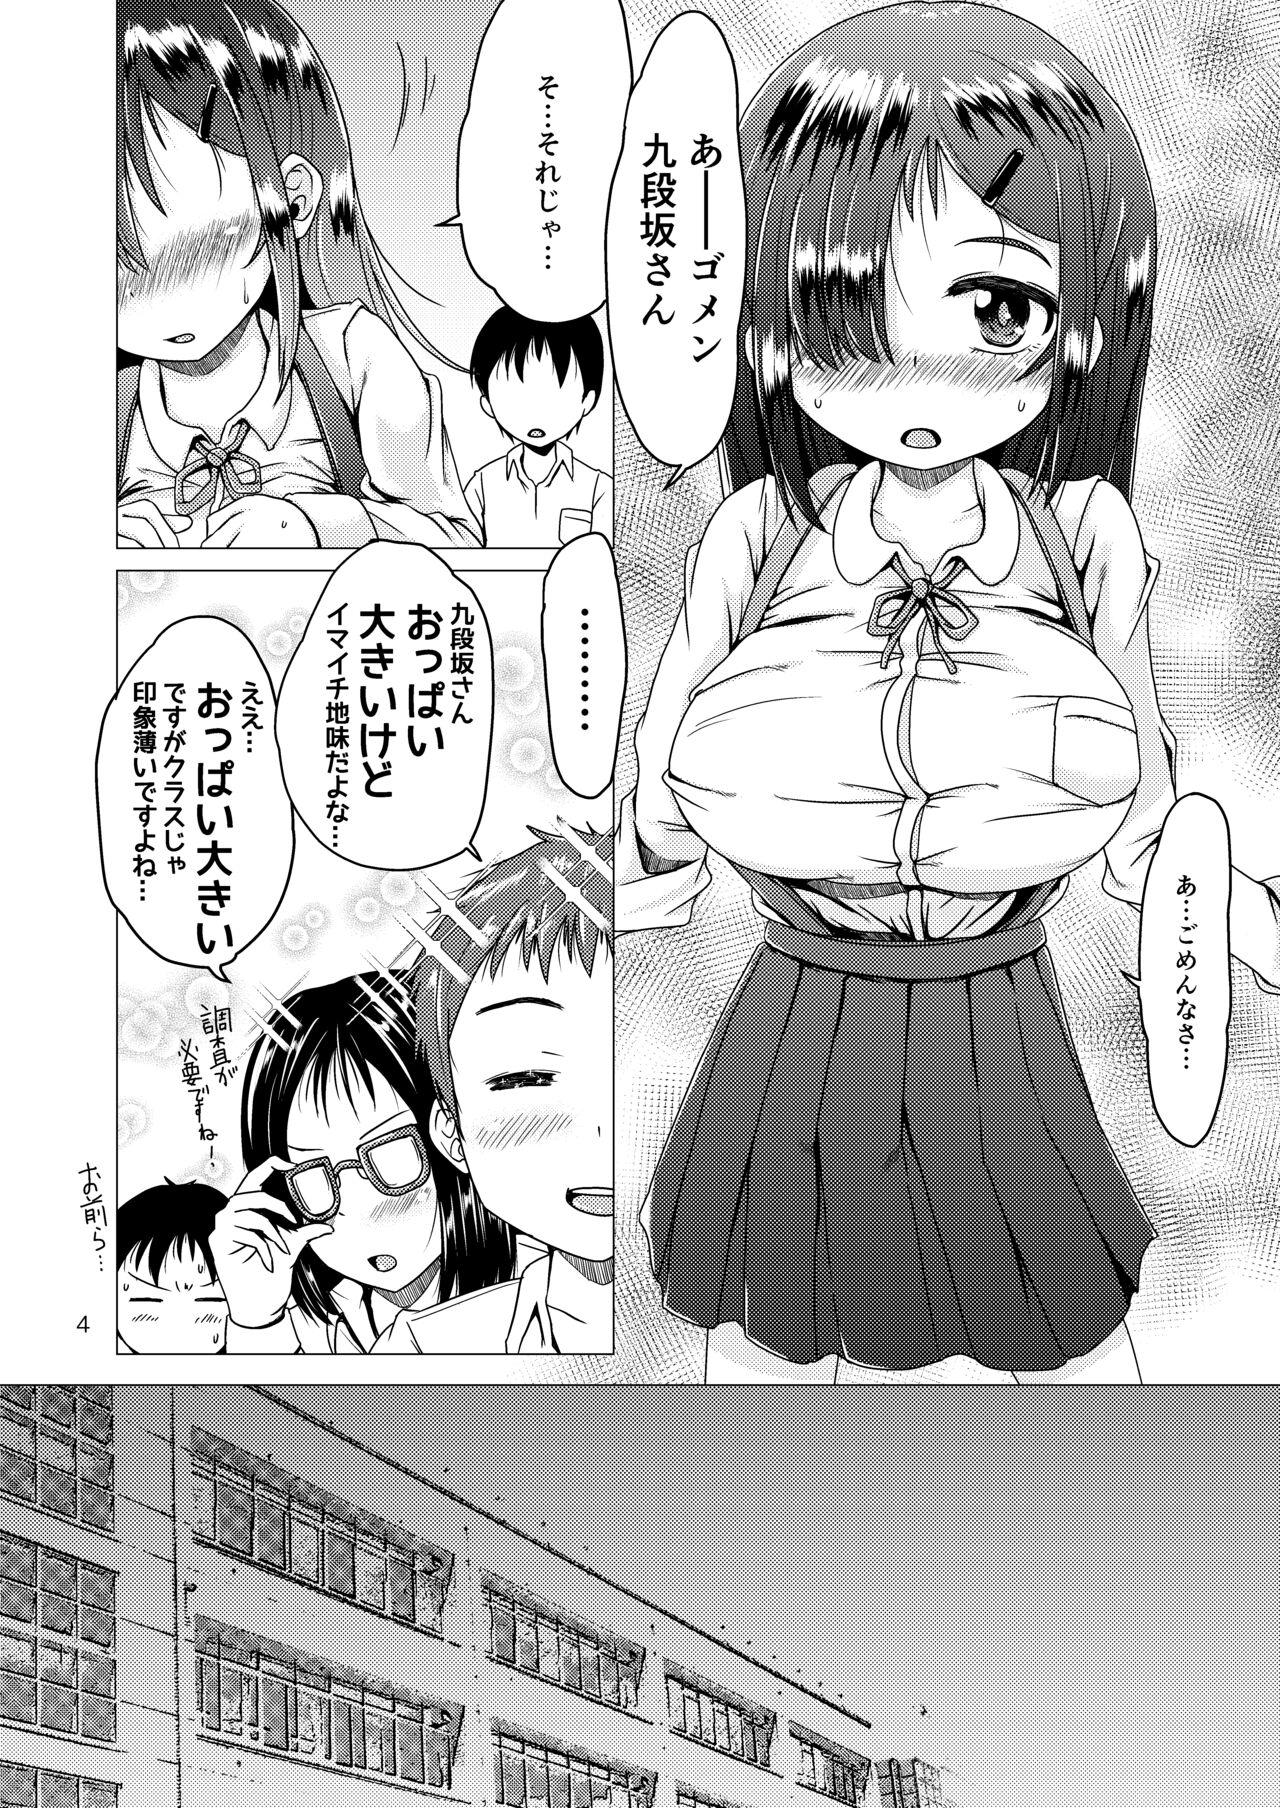 Indo トイレの花子さんが地味で巨乳なクラスメイトだった話。 - Original Rica - Page 4